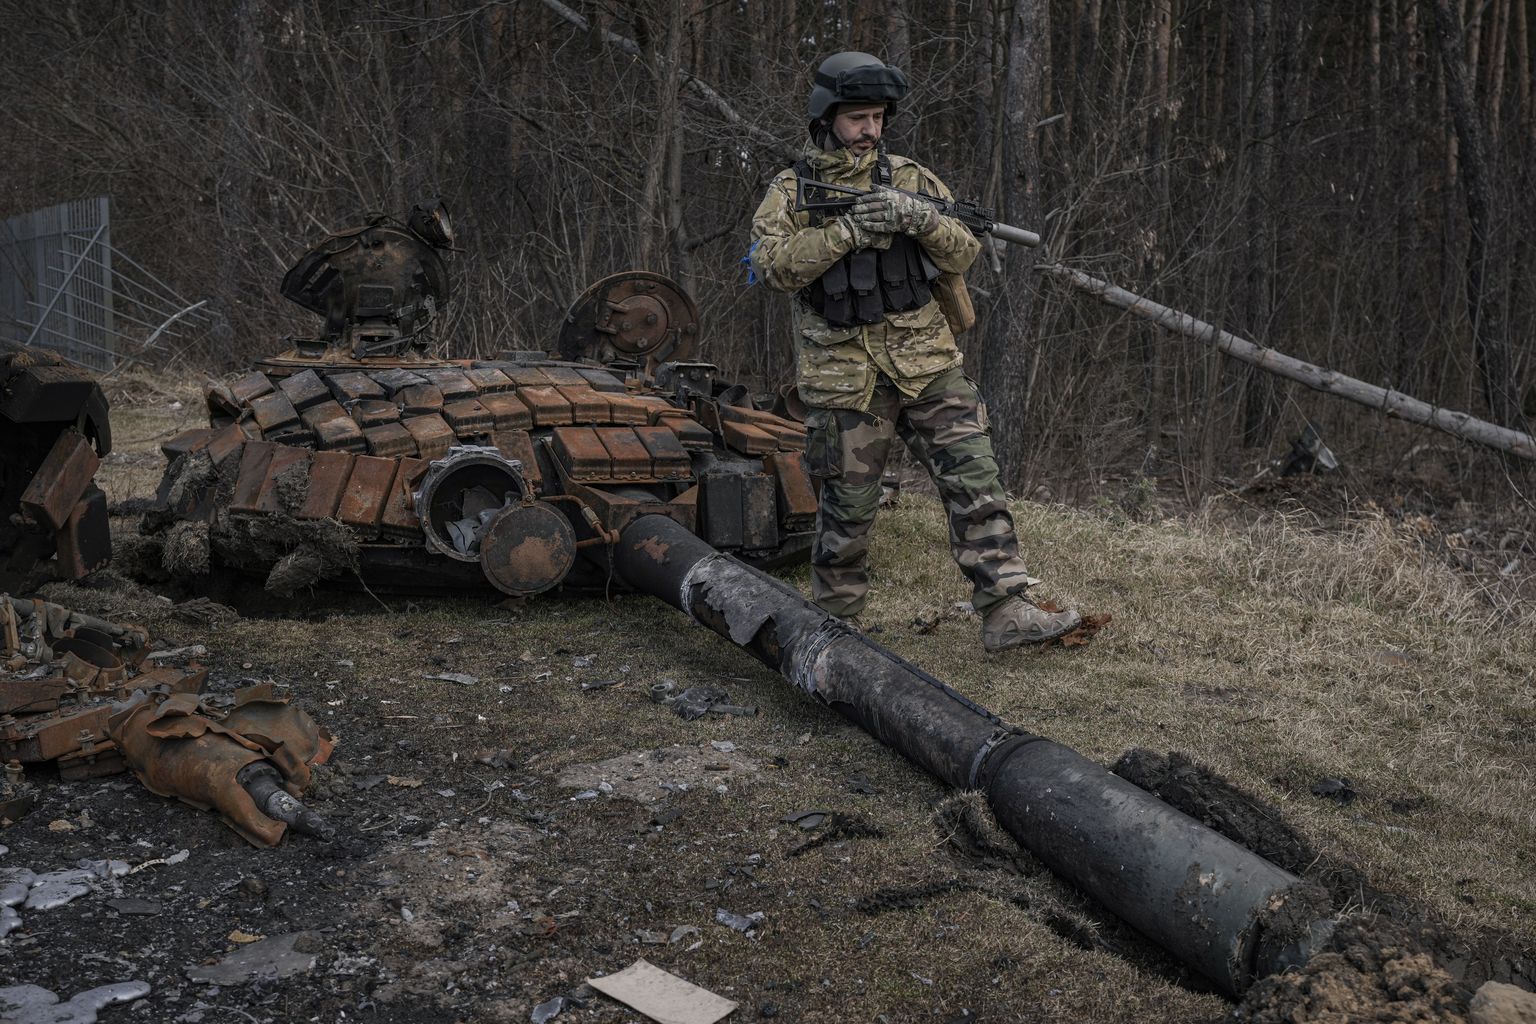 A Ukrainian serviceman walks next to the wreck of a Russian tank in Stoyanka, апреля, Воскресенье, Март 27, 2022.